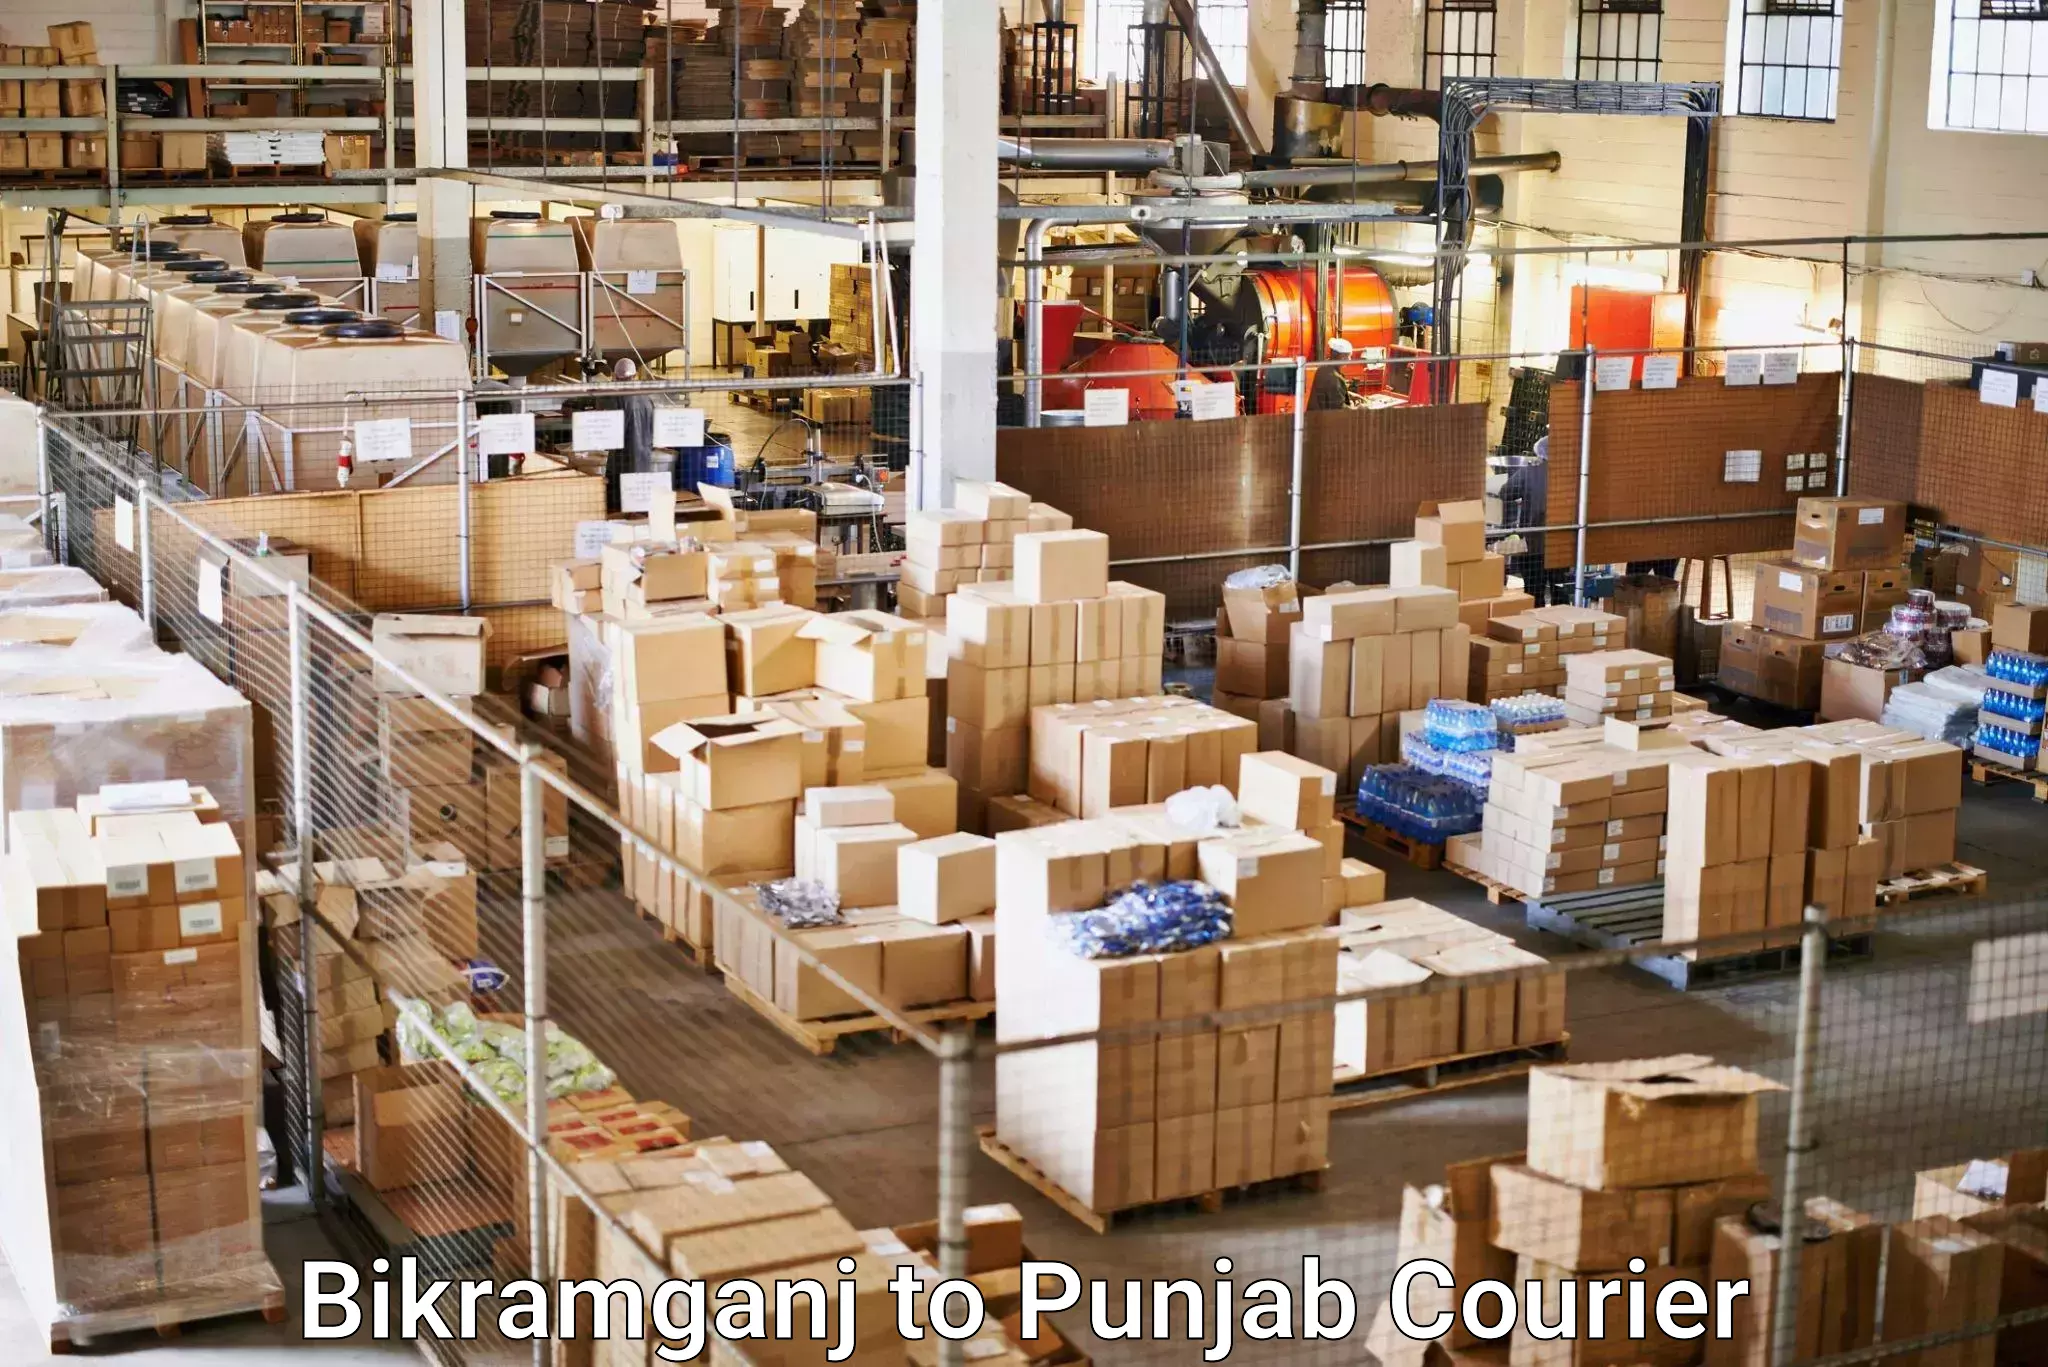 Seamless shipping service Bikramganj to Amritsar